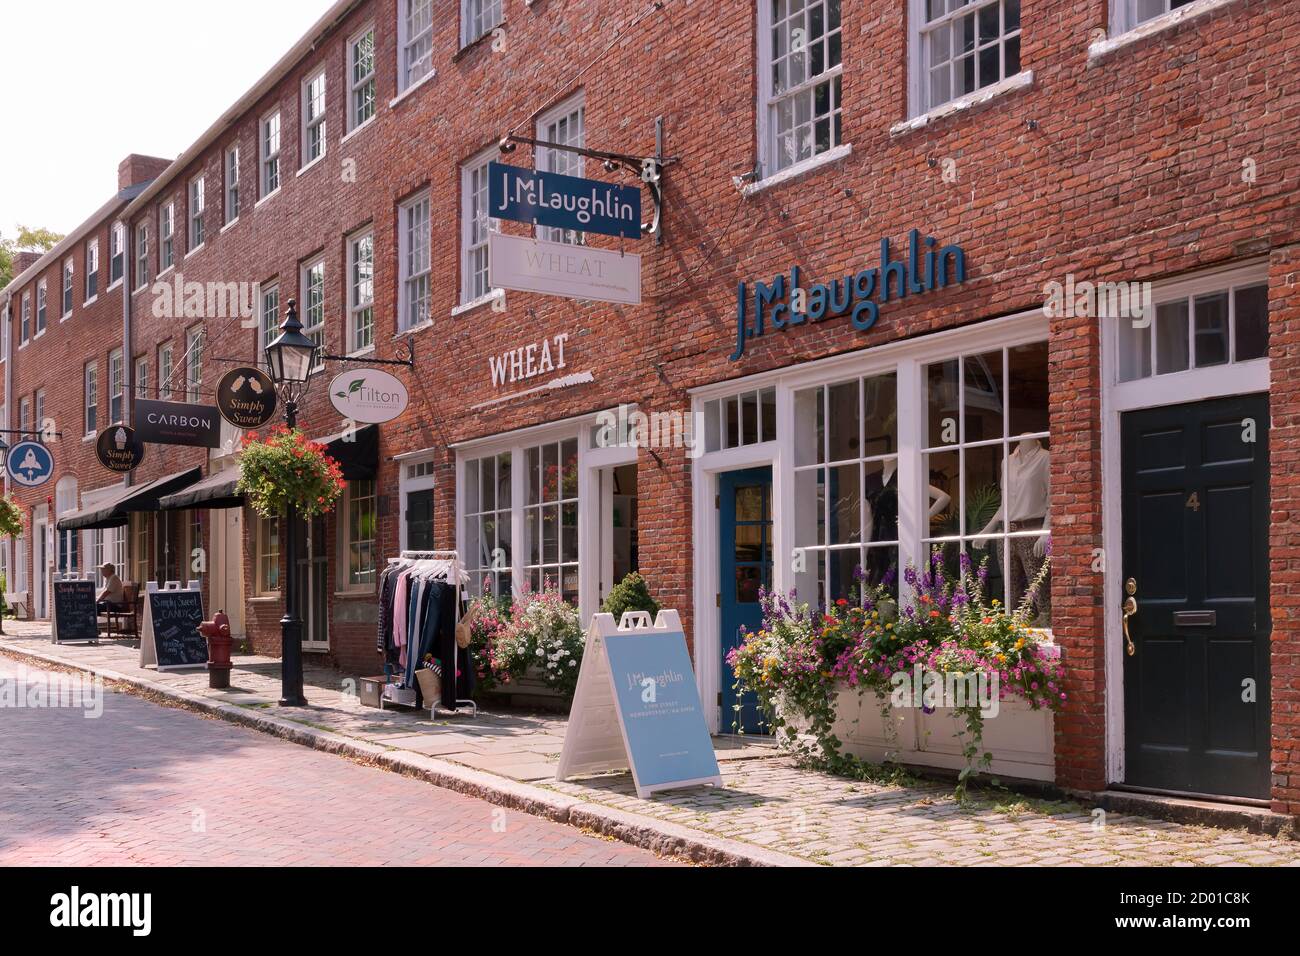 Magasins et boutiques le long de Inn Street dans la ville historique de Newburyport, Massachusetts, États-Unis. Banque D'Images